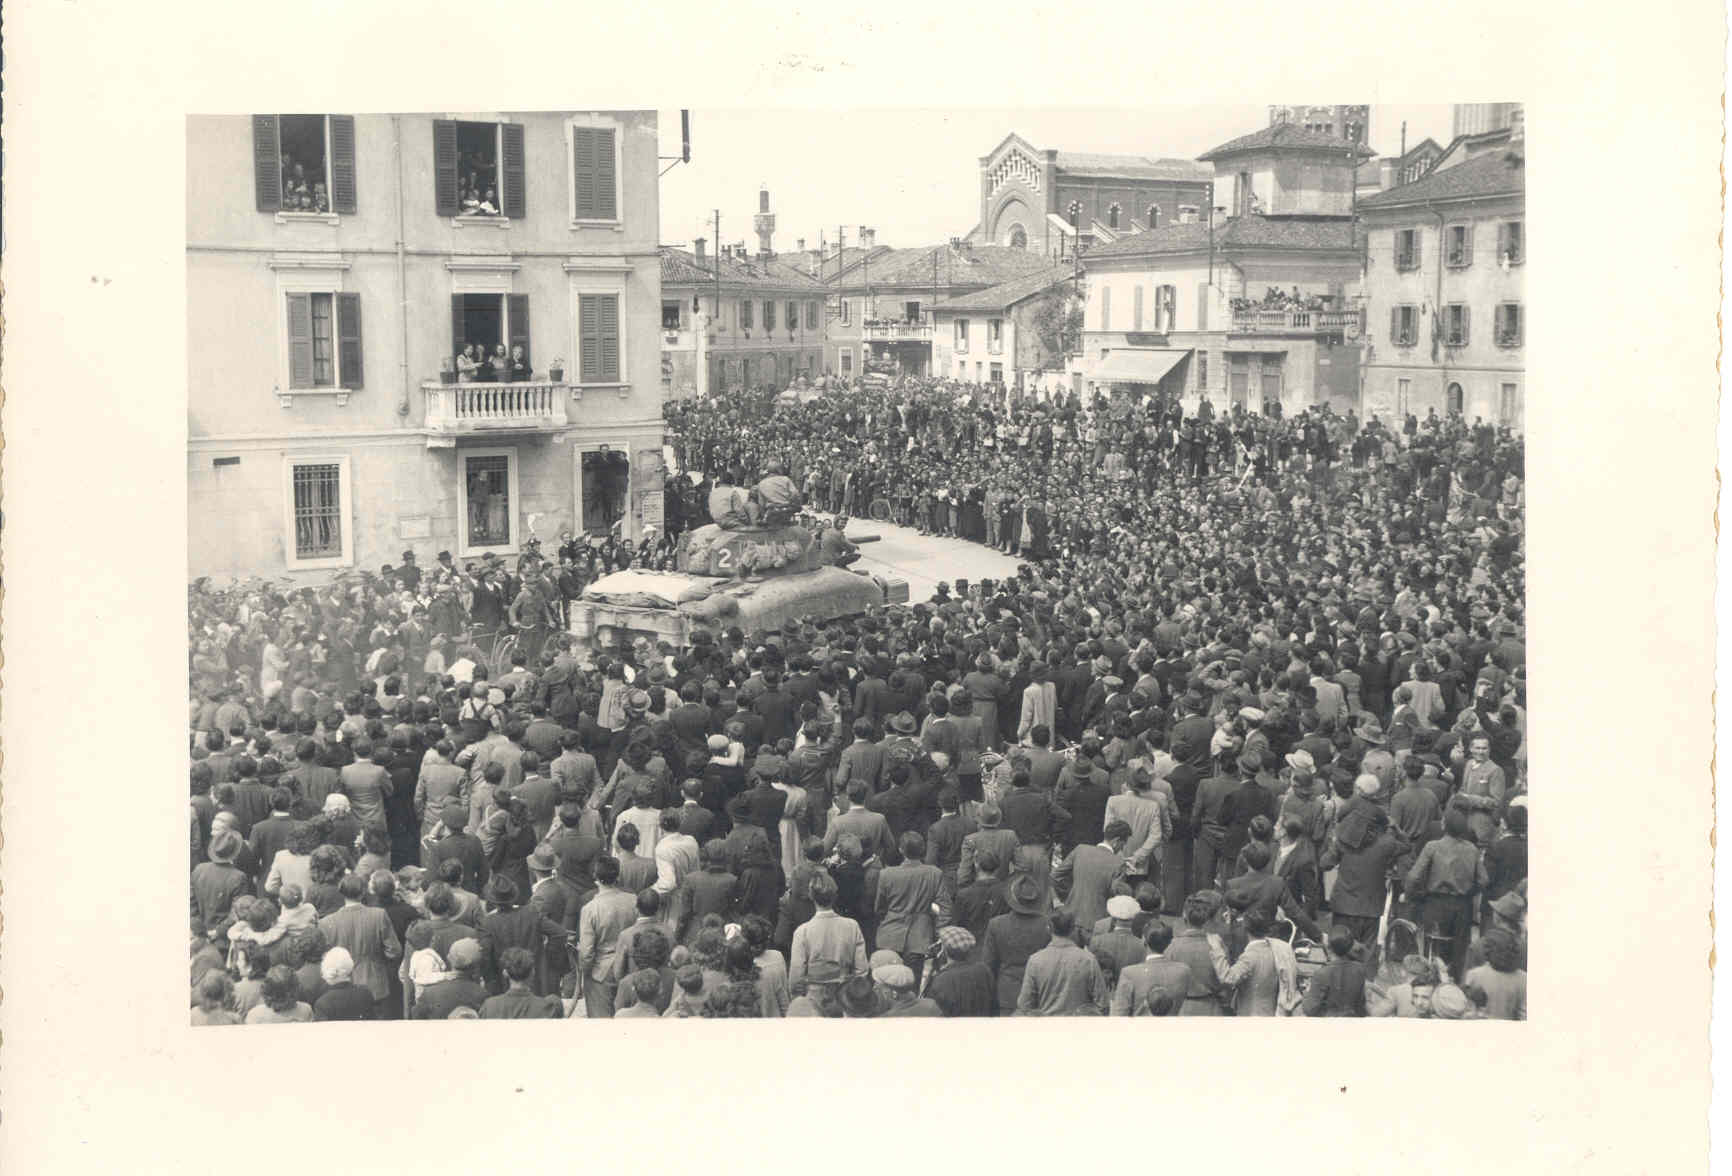 28 aprile 1945 ALLEATI IN CITTA' Automezzi USA ac colti da una grande folla, piazza Libertà (8)